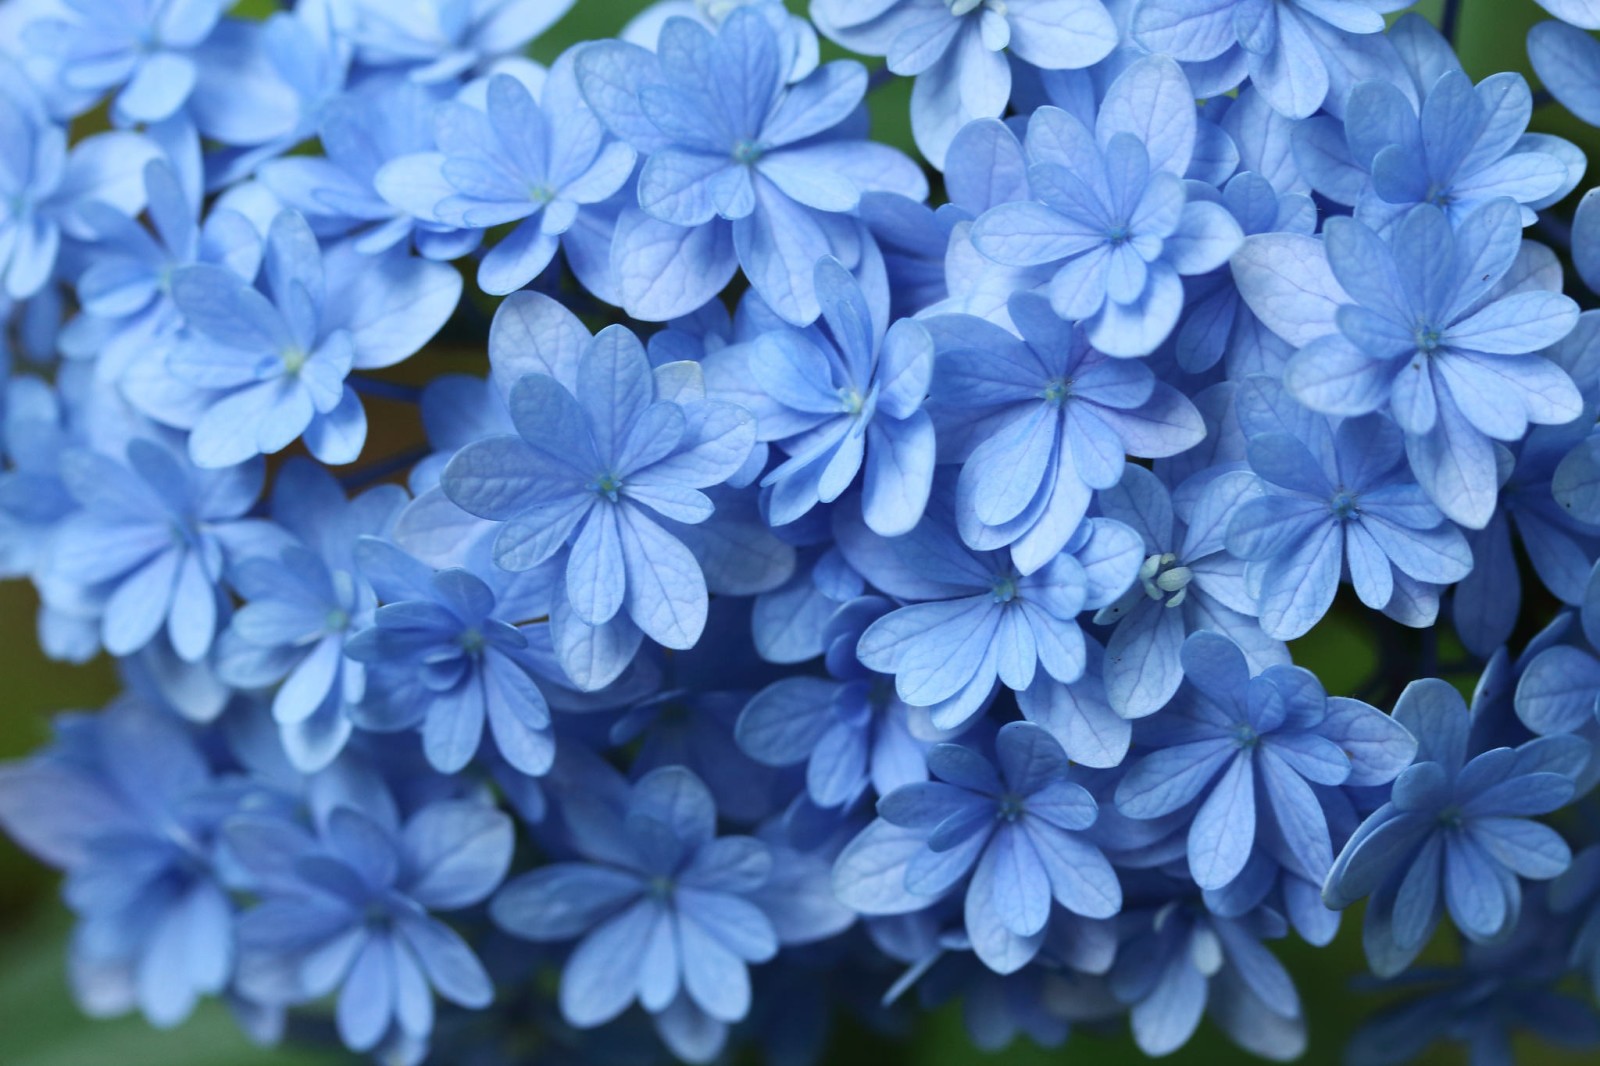 สีน้ำเงิน, แมโคร, พืชไม้ดอกขนาดใหญ่